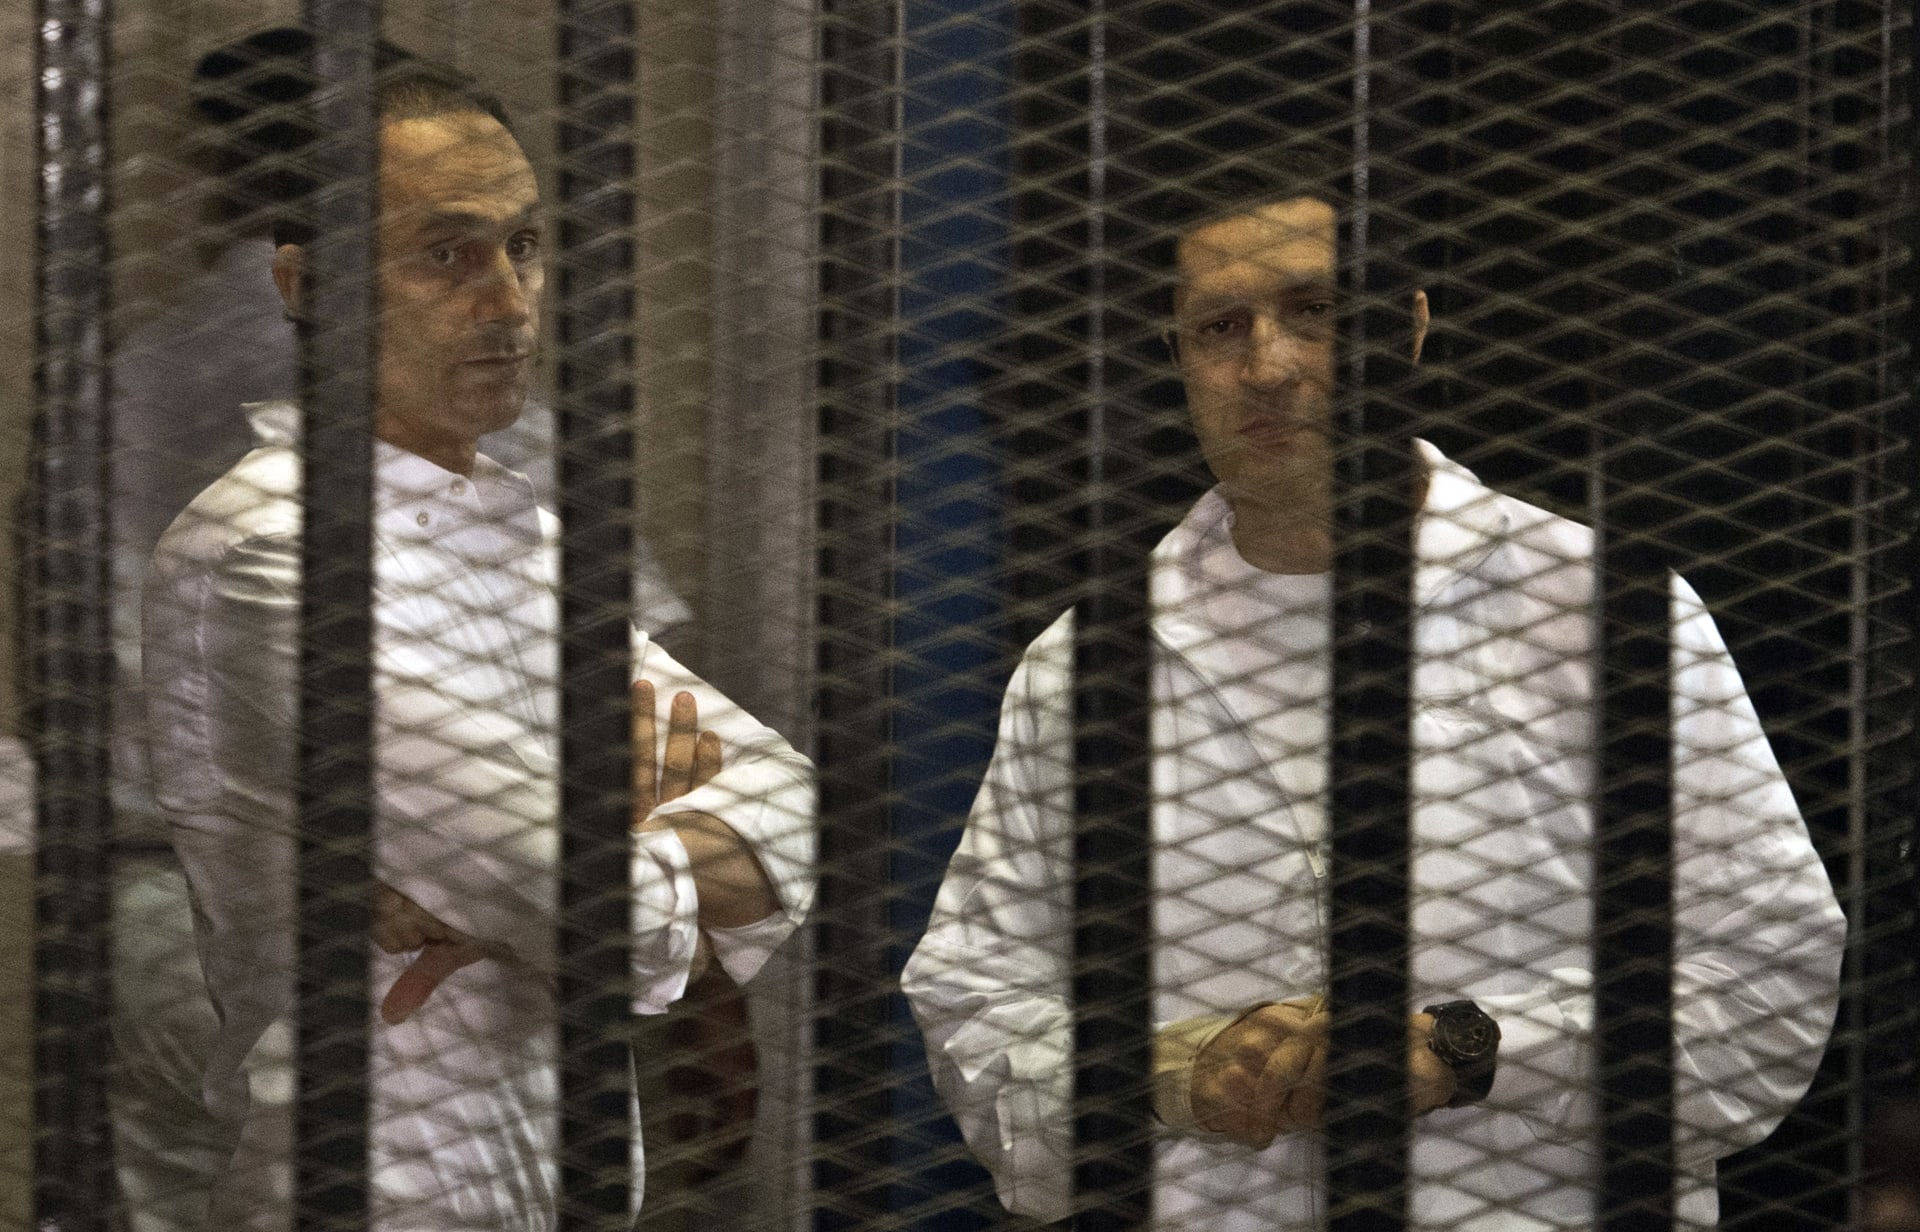 بعد أمر إلقاء القبض عليه بقضية البورصة.. علاء مبارك يتمسك بـ"ظهور الحقيقة" 